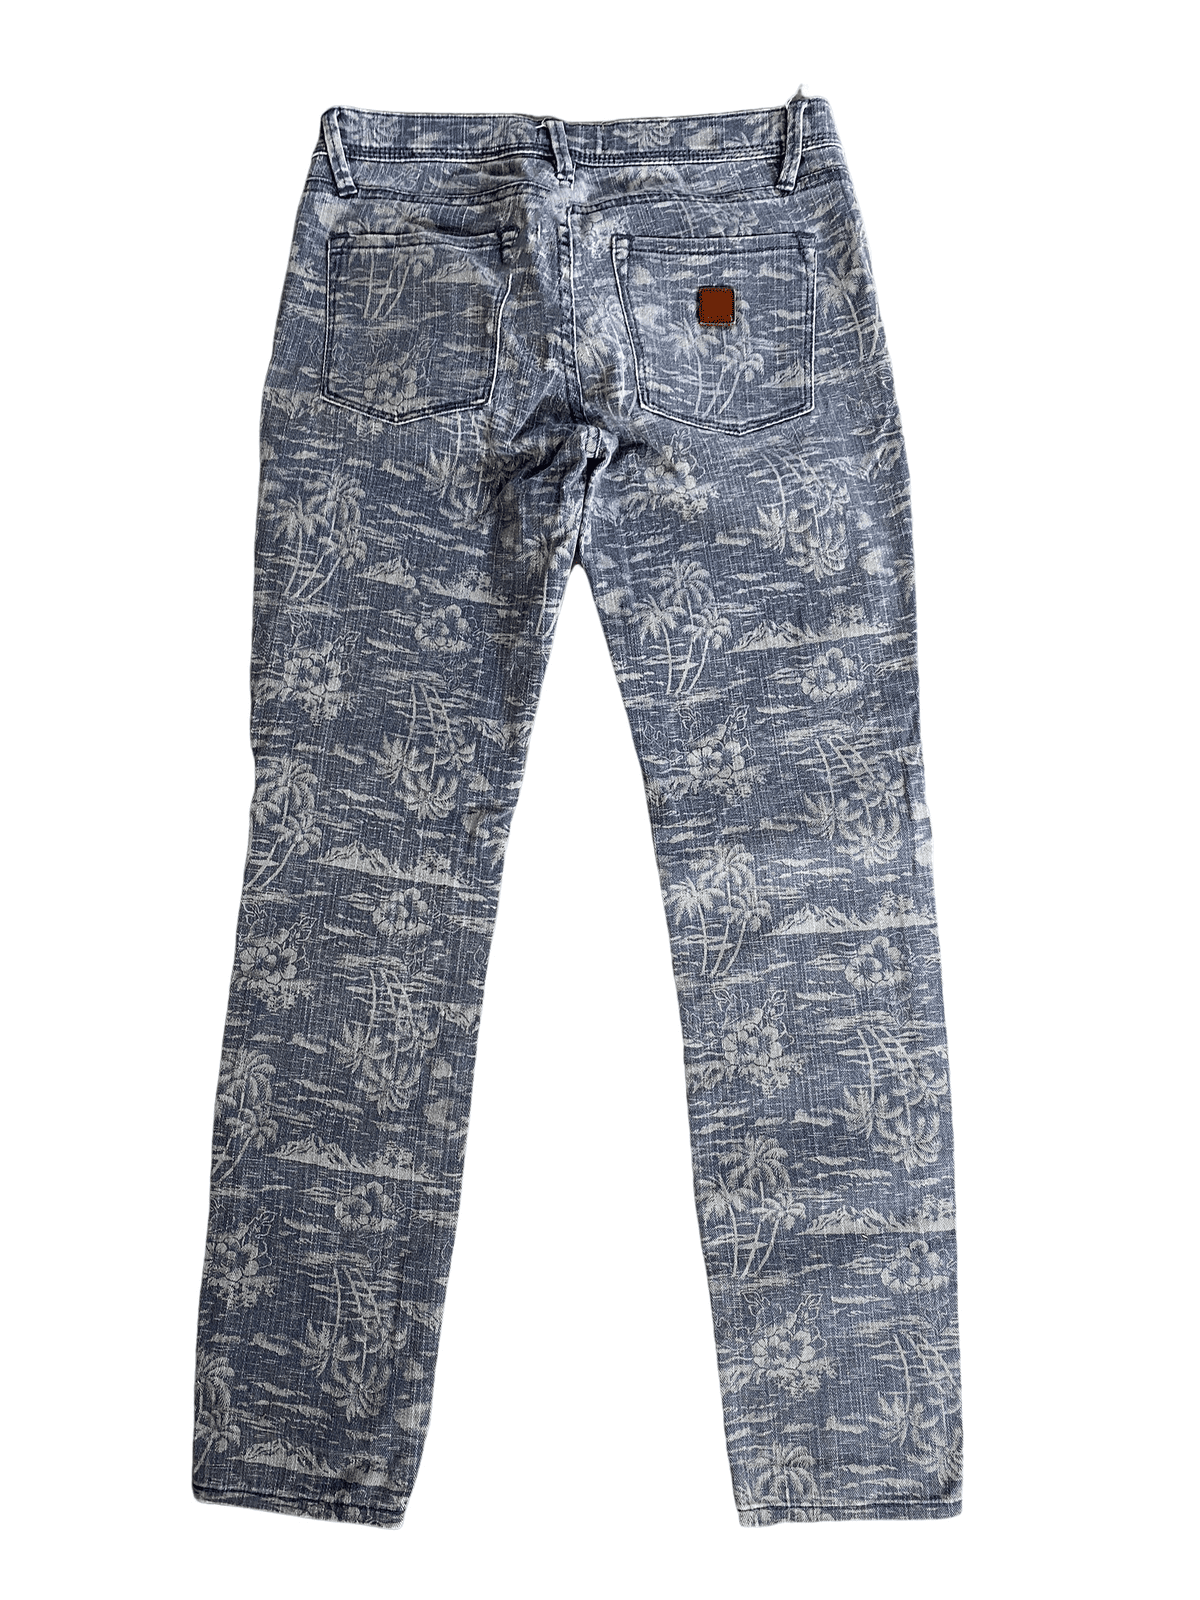 Roxy grey tropical print skinny jeans | size W:25